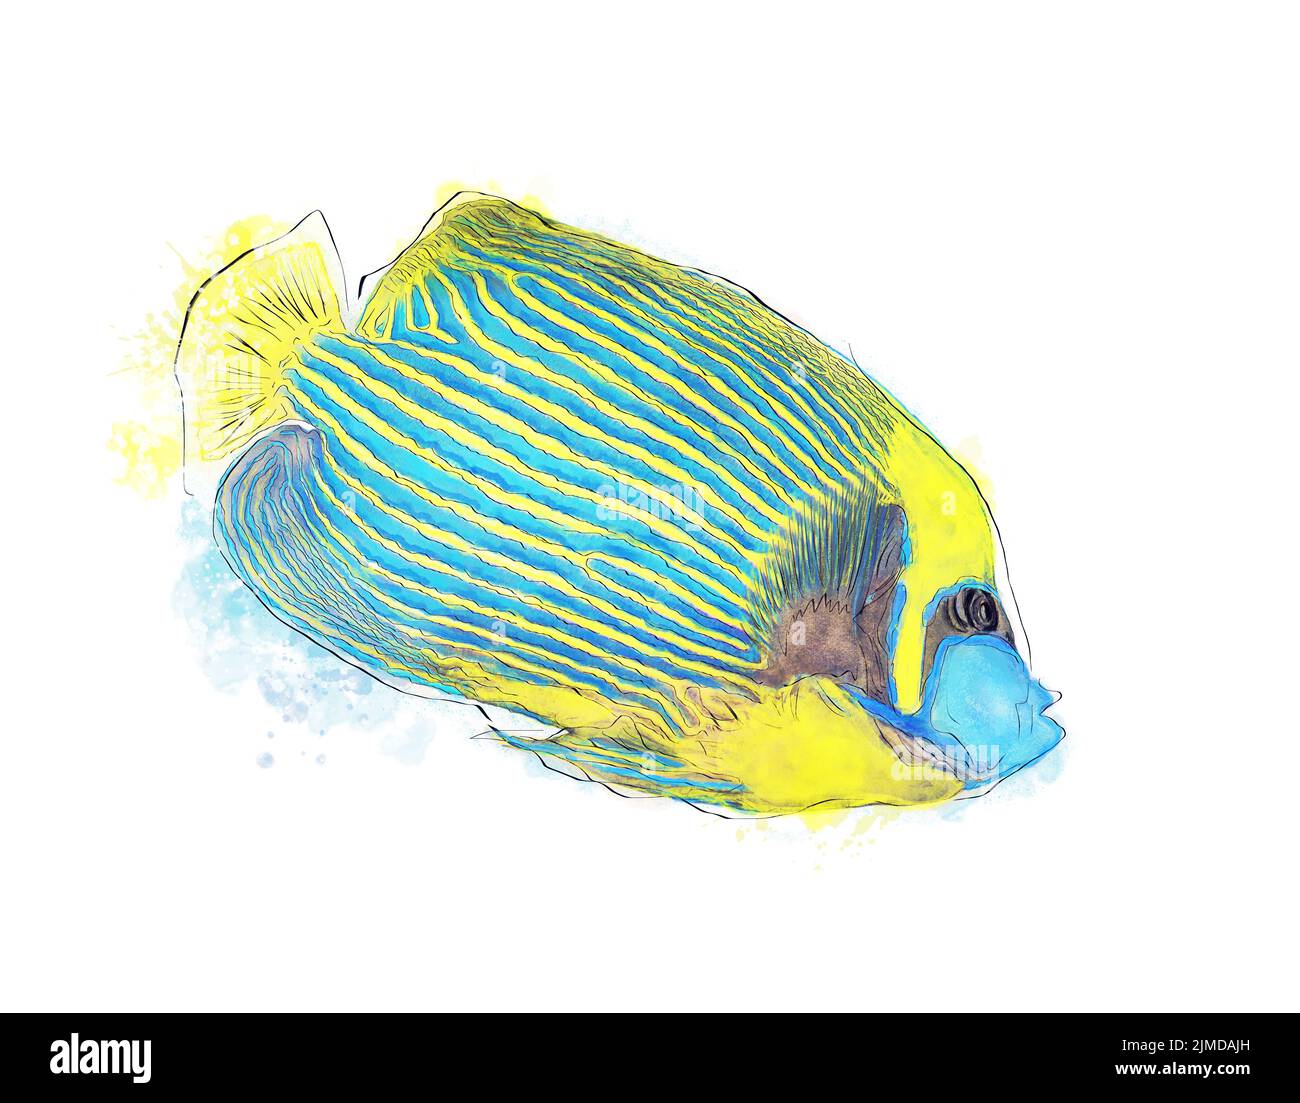 Imagen de acuarela del Emperador Angelfish sobre fondo blanco. Peces tropicales de colores. Foto de stock